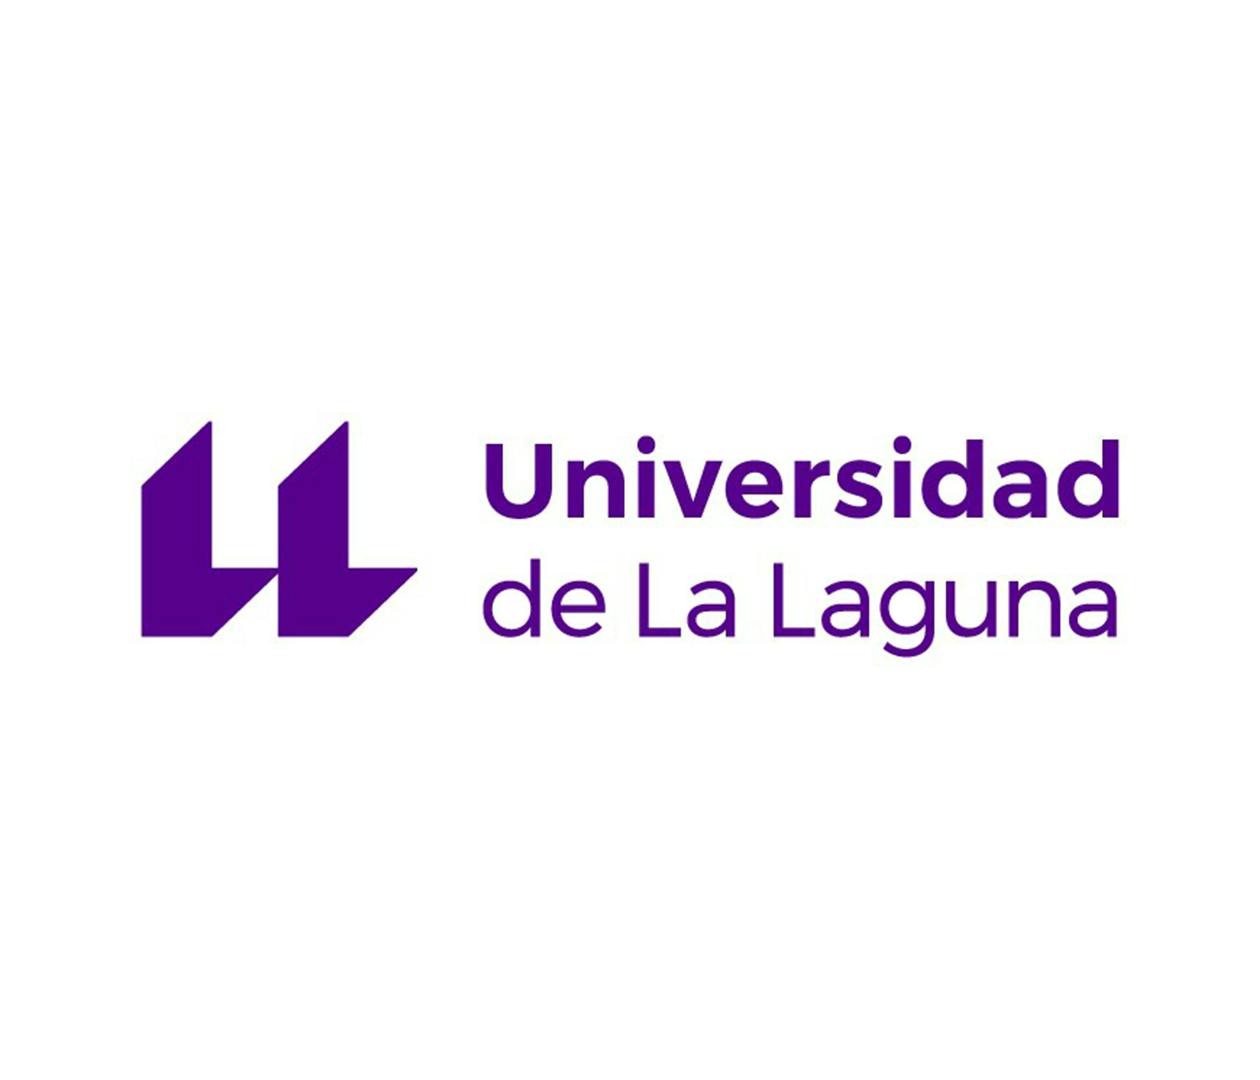 Logo dell'Università de La Laguna: due "L" affiancate che somigliano a due virgolette aperte, con a fianco la scritta "Universidad de La Laguna".